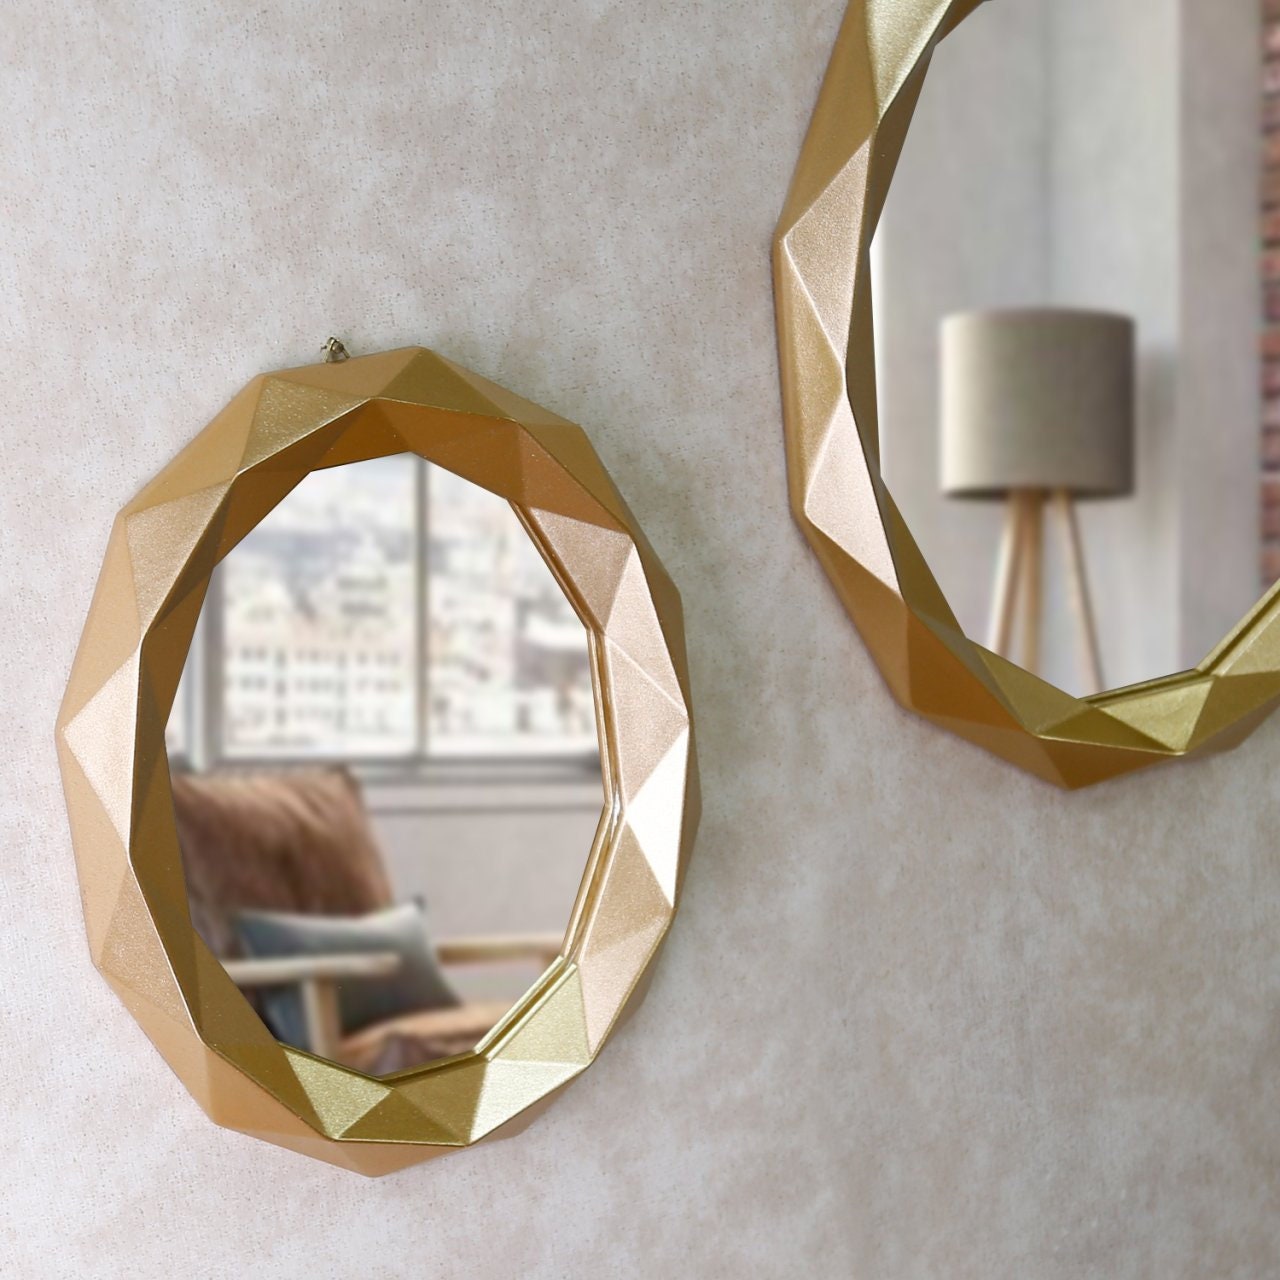 Sortie Spiegel / Set von 3 Wandspiegeln in Silber Farbe / Spiegel